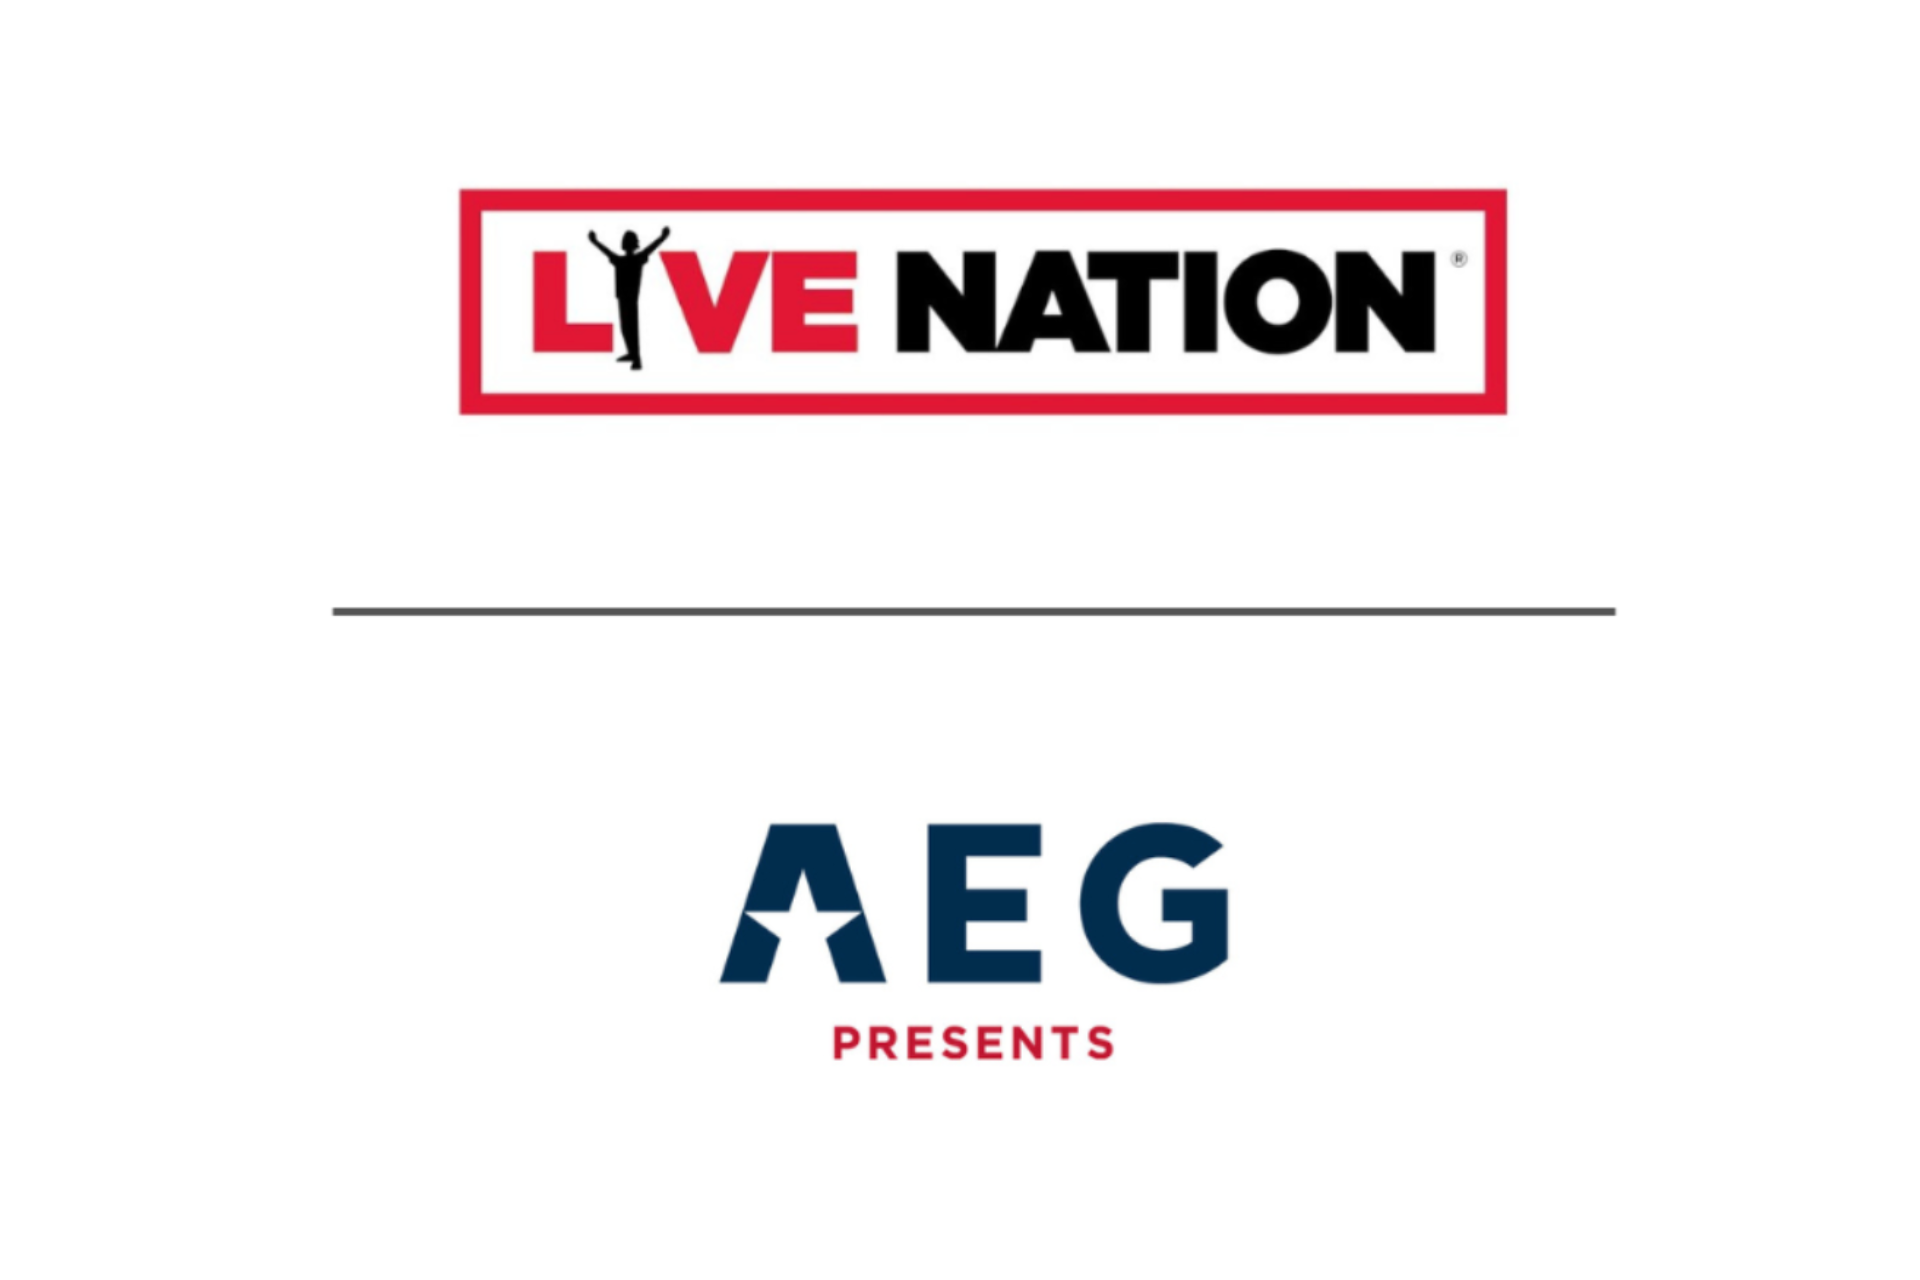 CEO da Live Nation e da AEG Presents trocam farpas em ação sobre monopólio